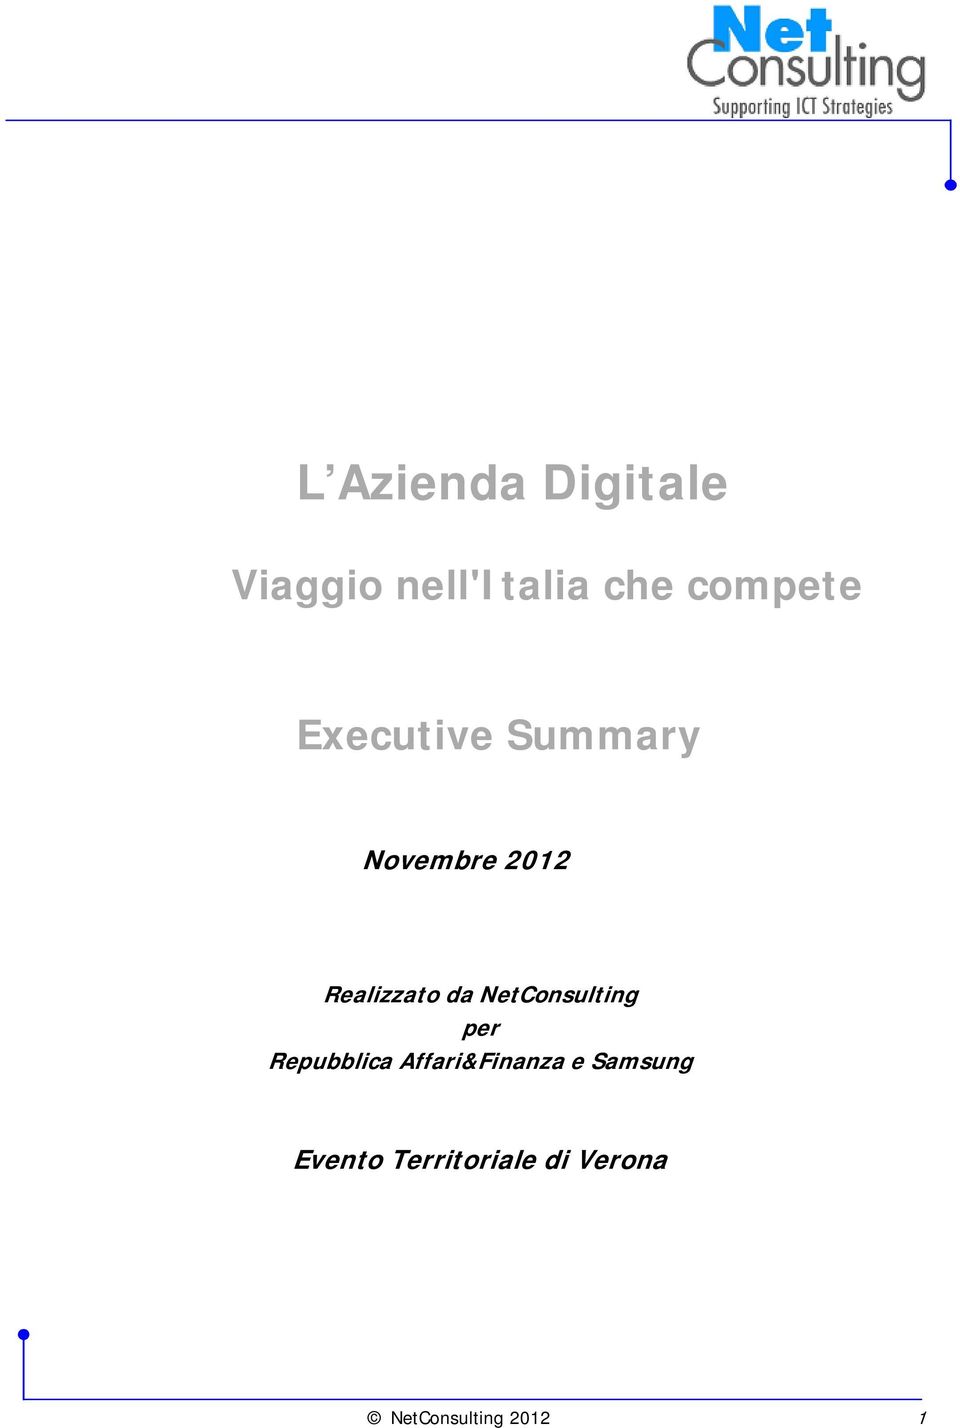 NetConsulting per Repubblica Affari&Finanza e